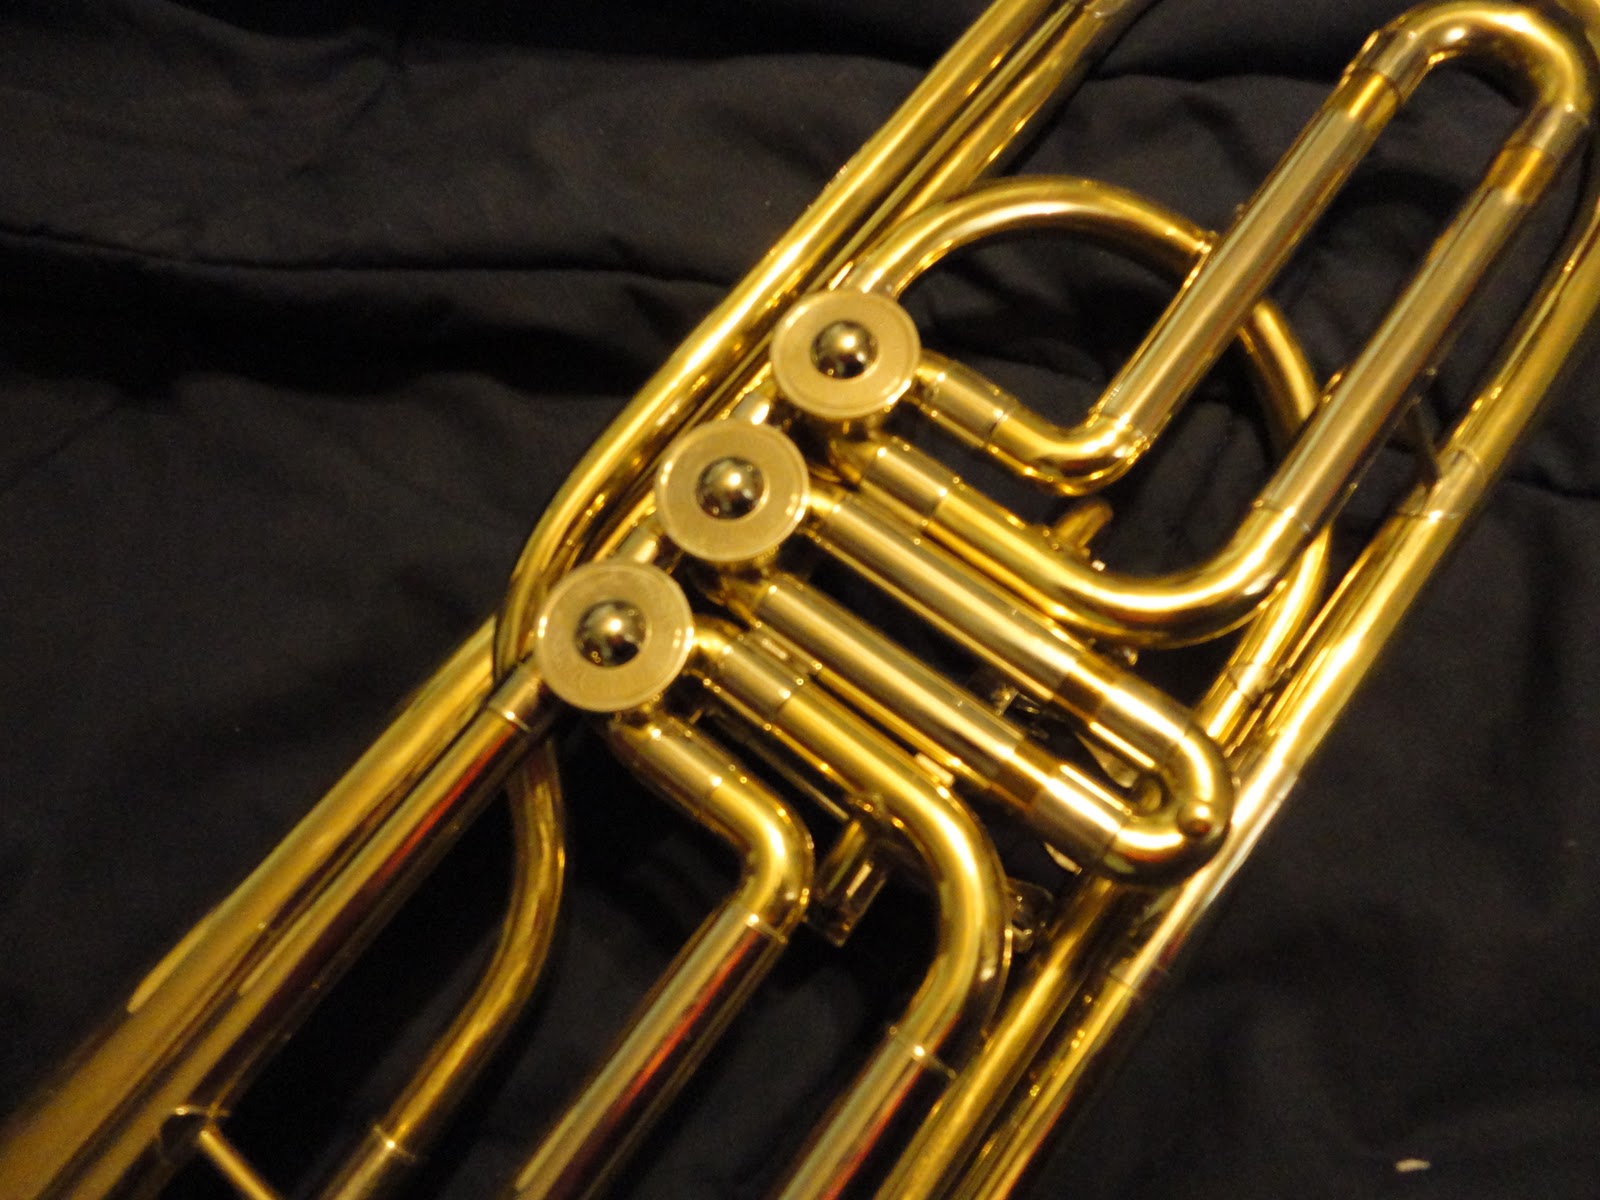 Бас труба звук. Бас труба. Ржавый тромбон. Золотой тромбон. Труба бас б1.